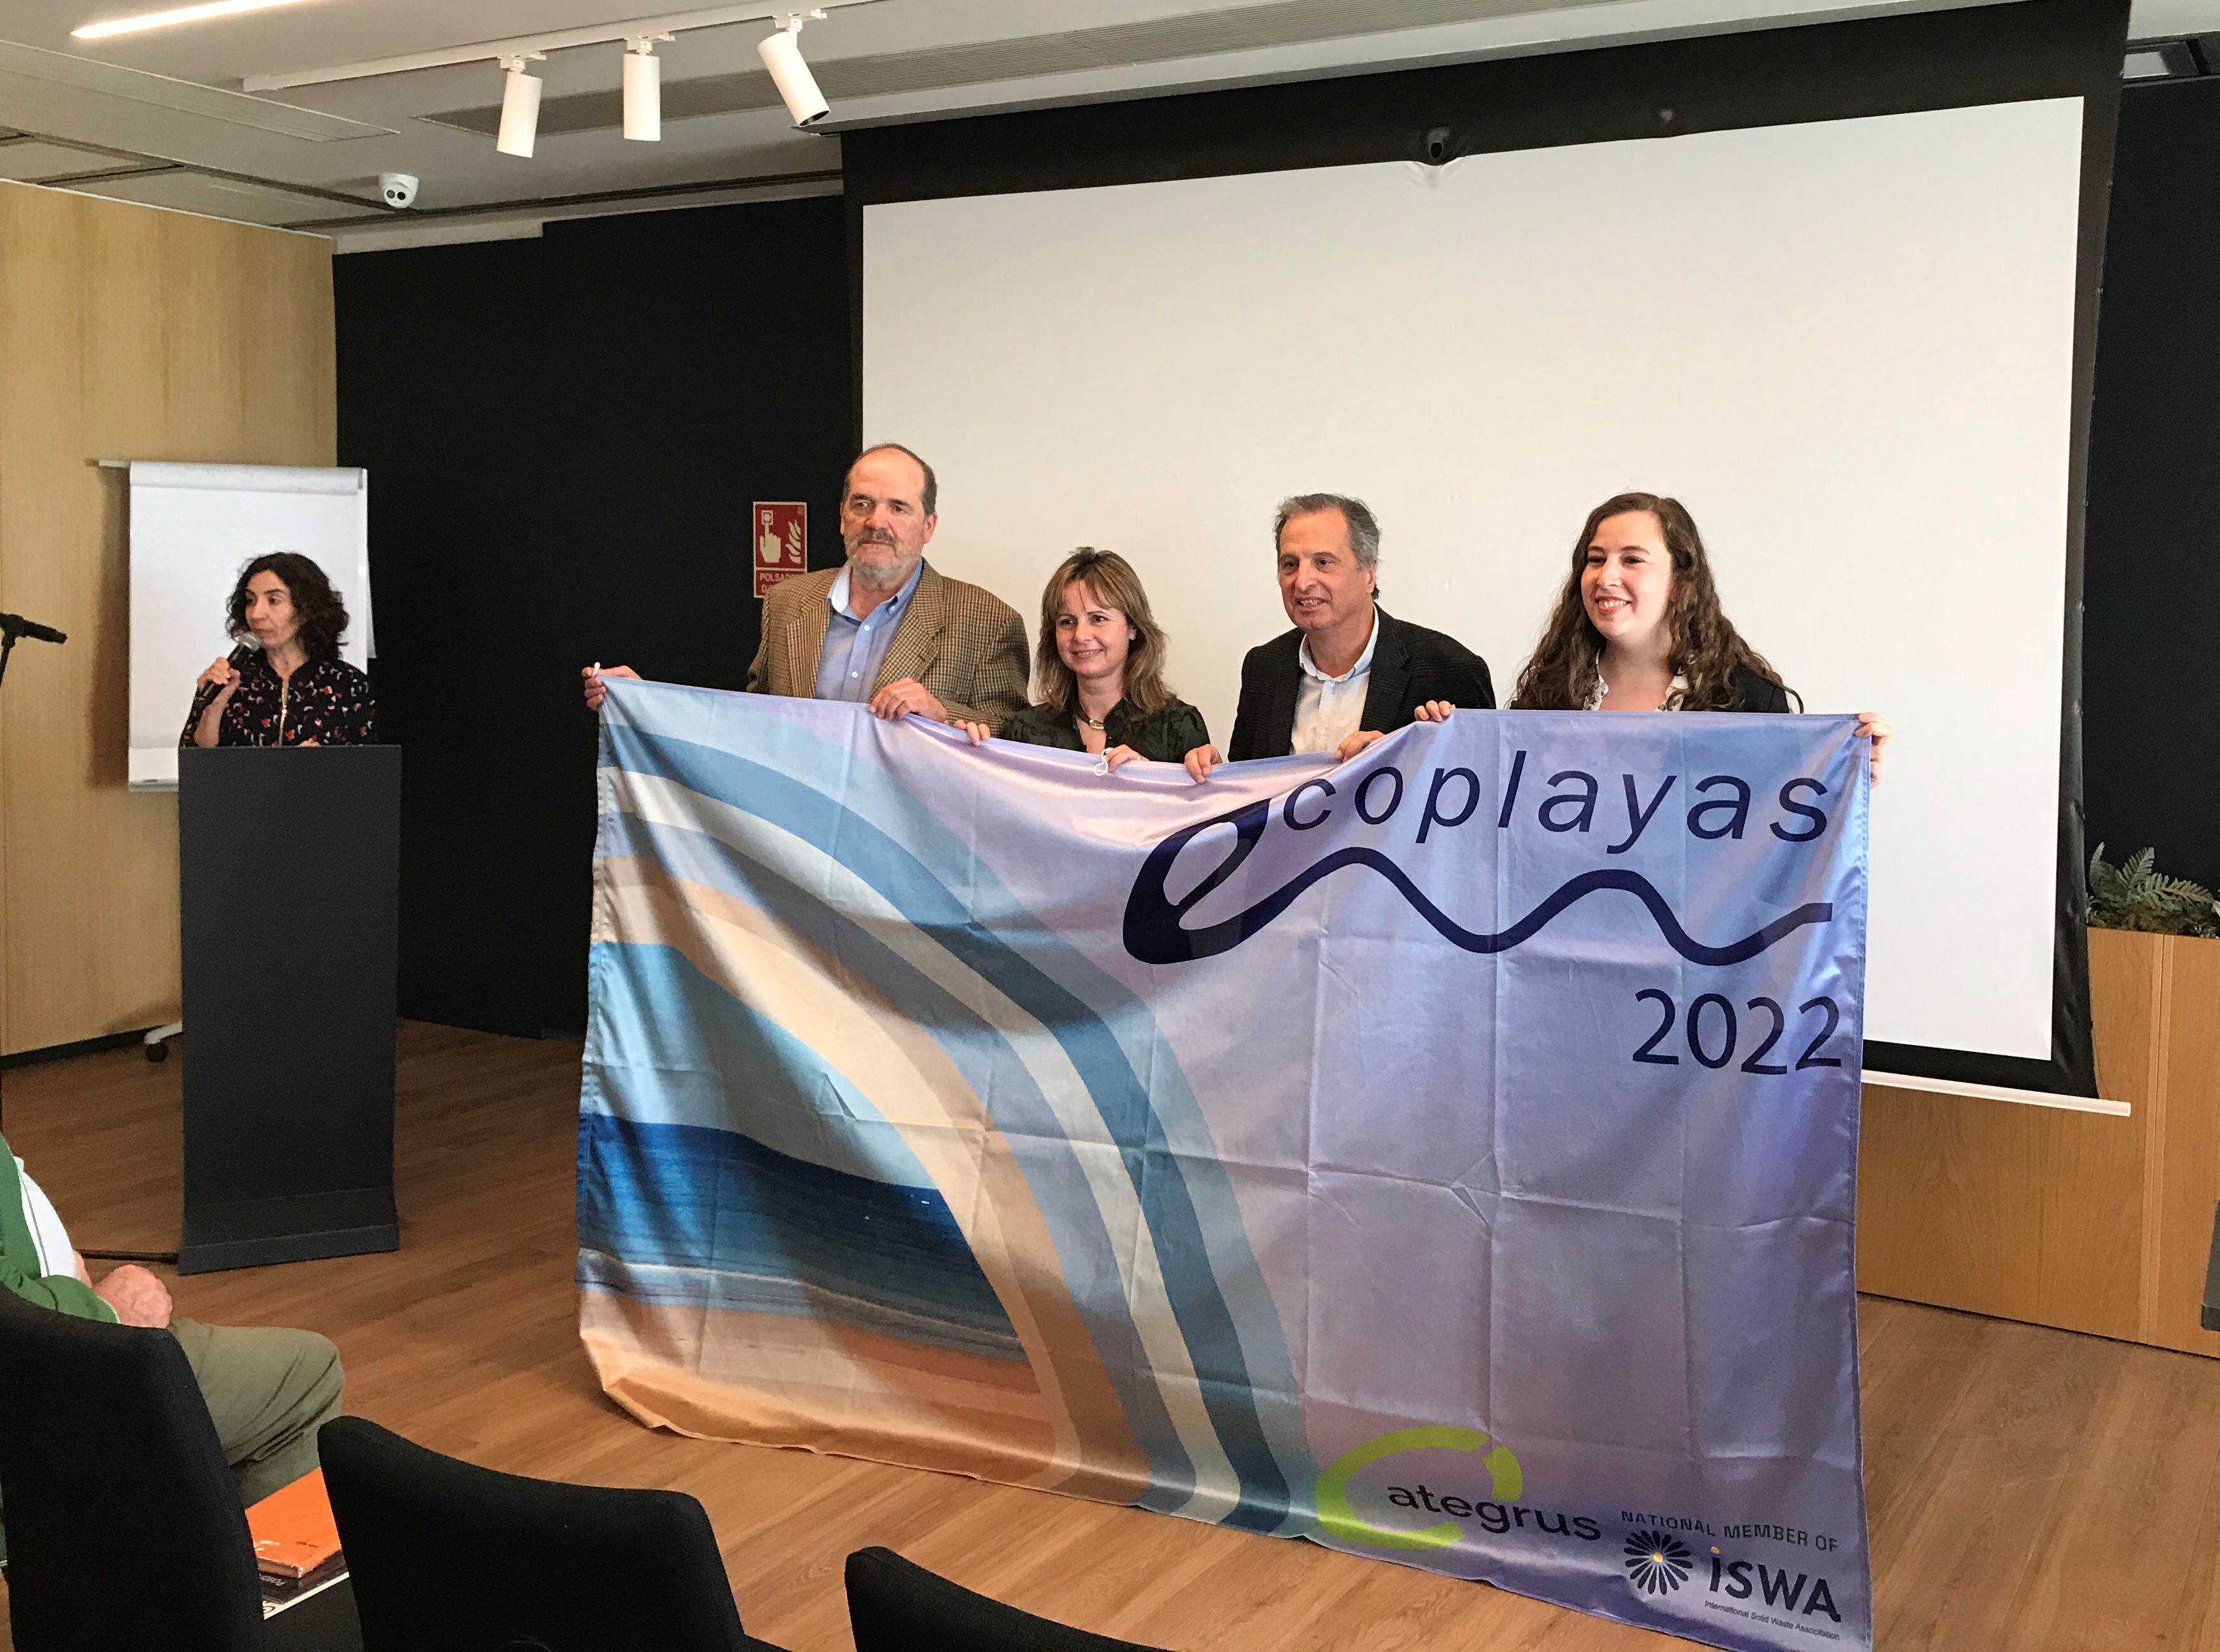 Cinc platges de Vandellòs i l’Hospitalet de l’Infant, reconegudes novament amb la Bandera Ecoplayas